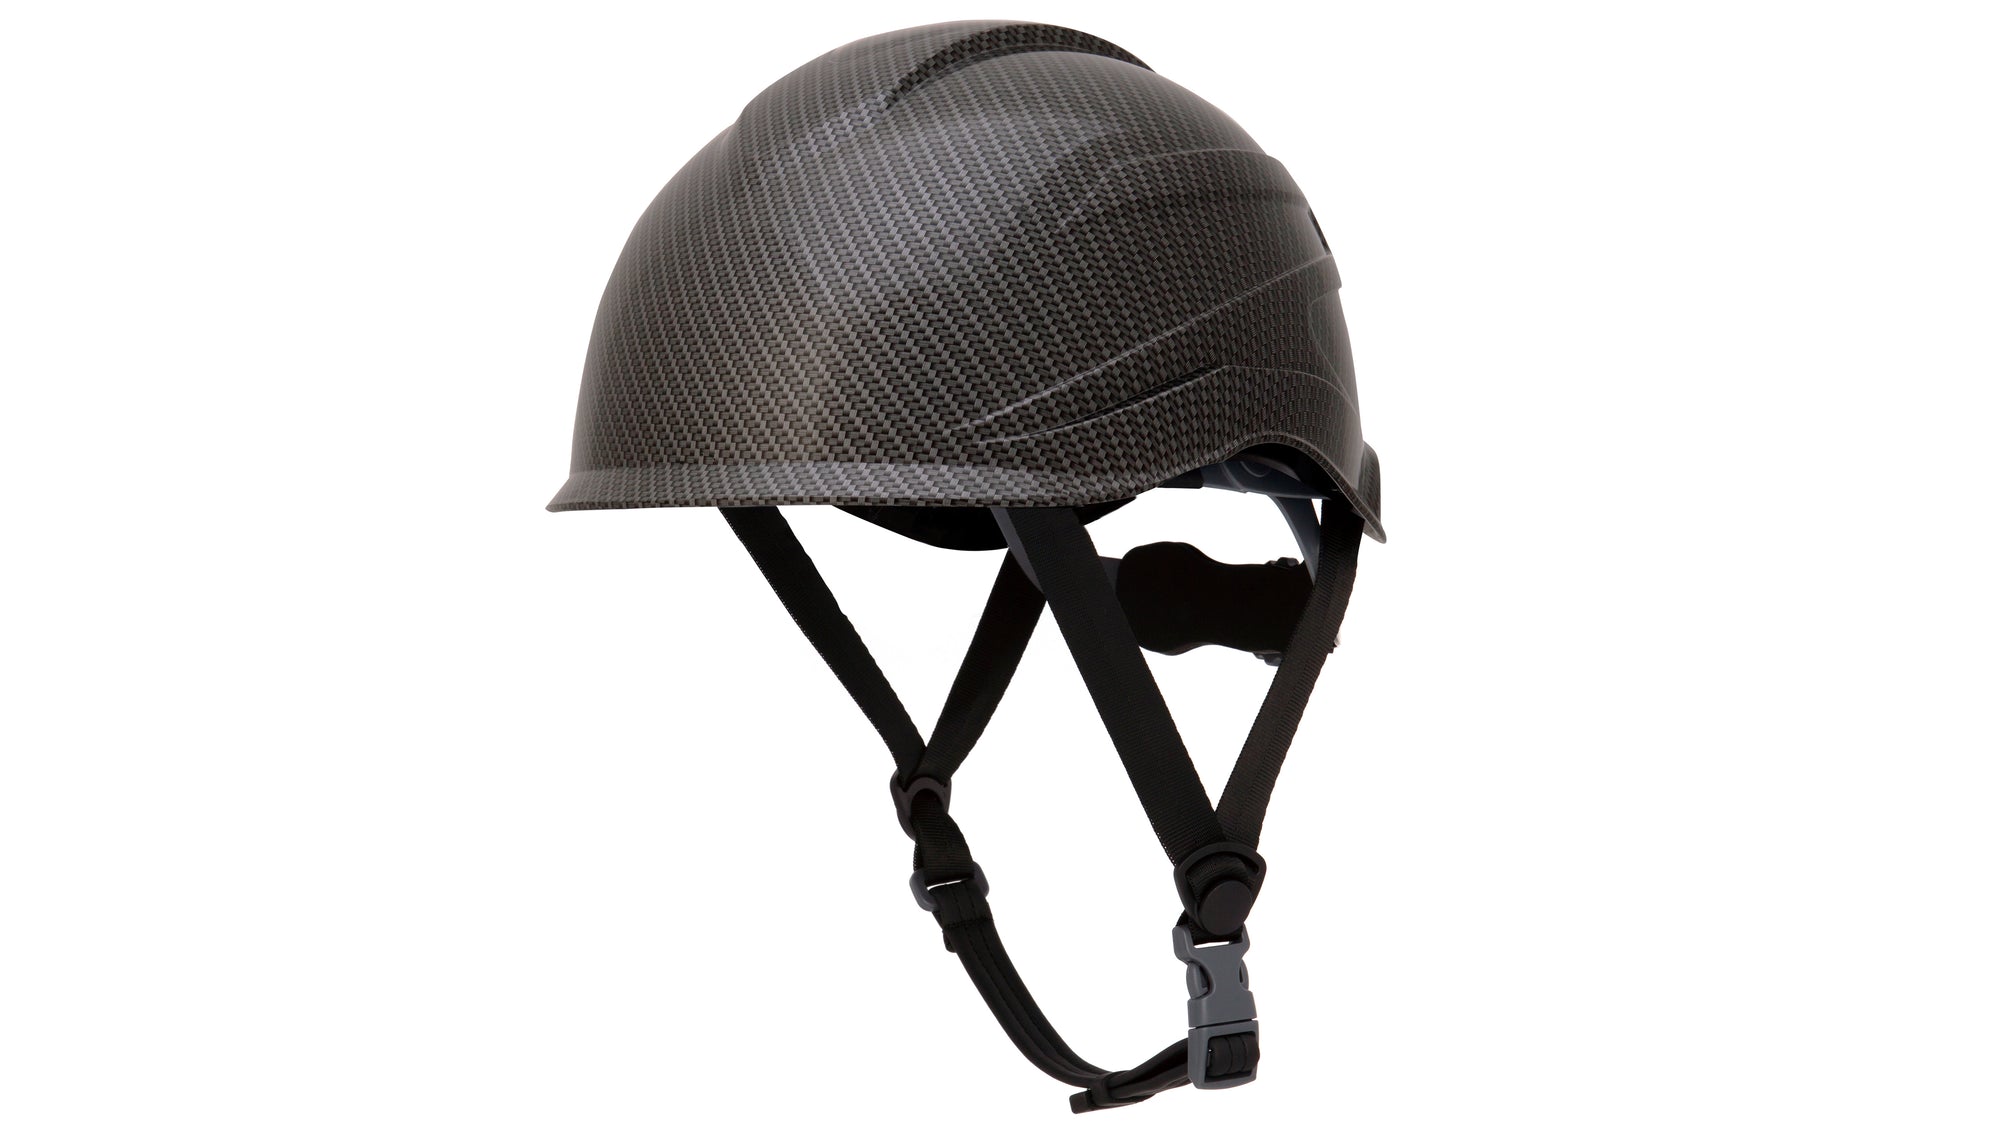 Pyramex Ridgeline Xr7 Safety Helmet_Black Graphite - Work World - Workwear, Work Boots, Safety Gear